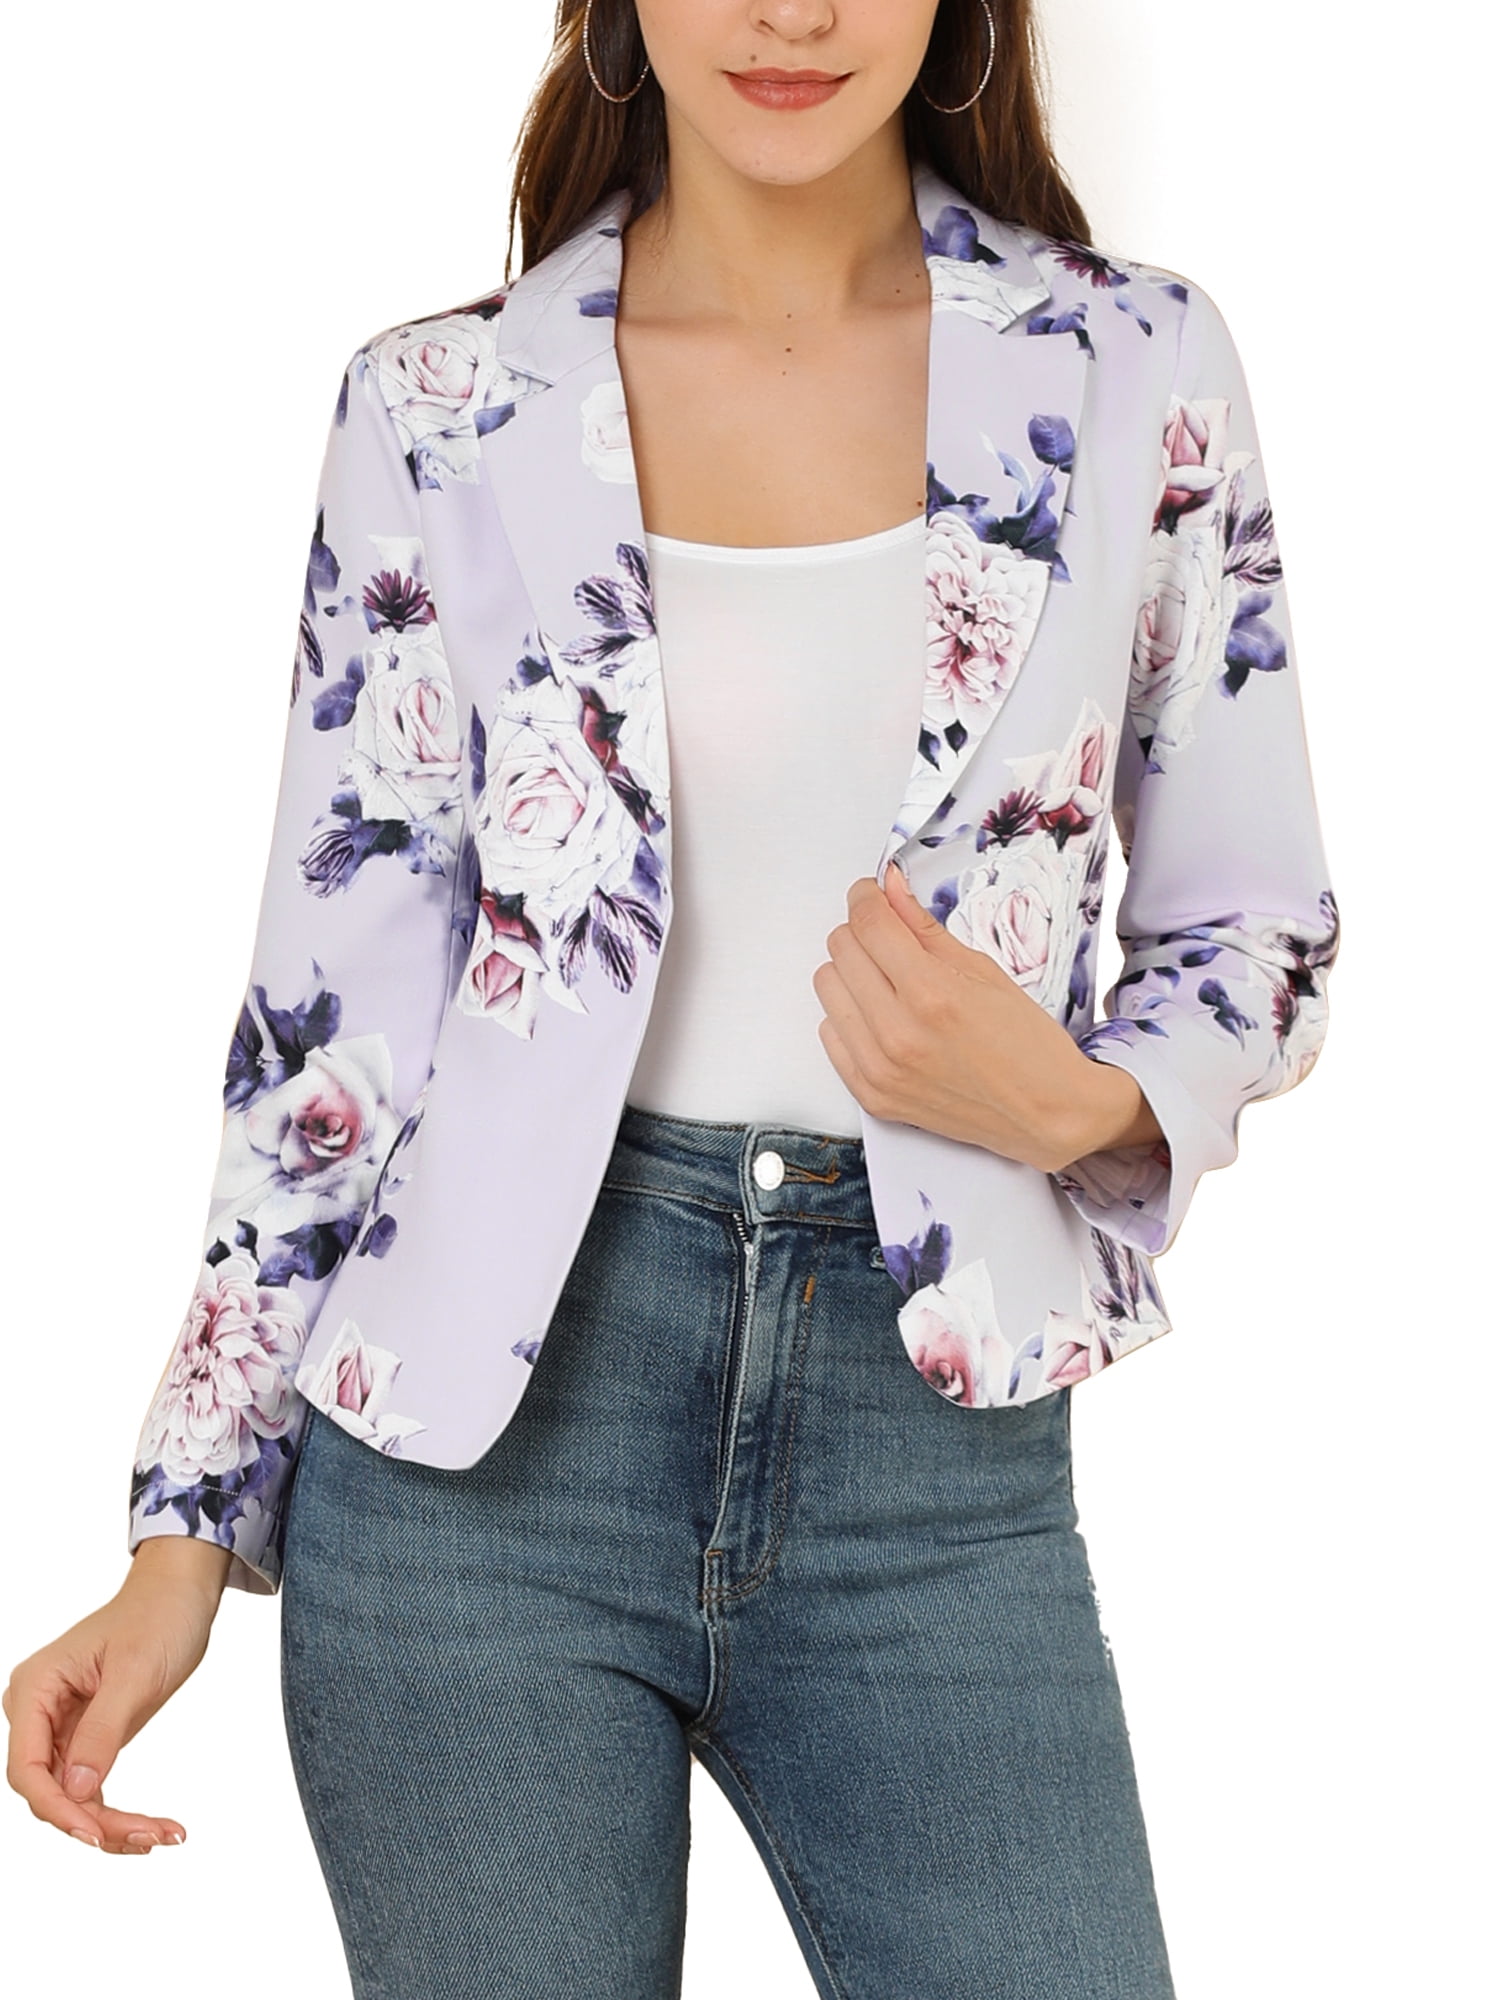 WAWAYA Womens Open Front Office OL Floral Print Fashion Blazer Jackets